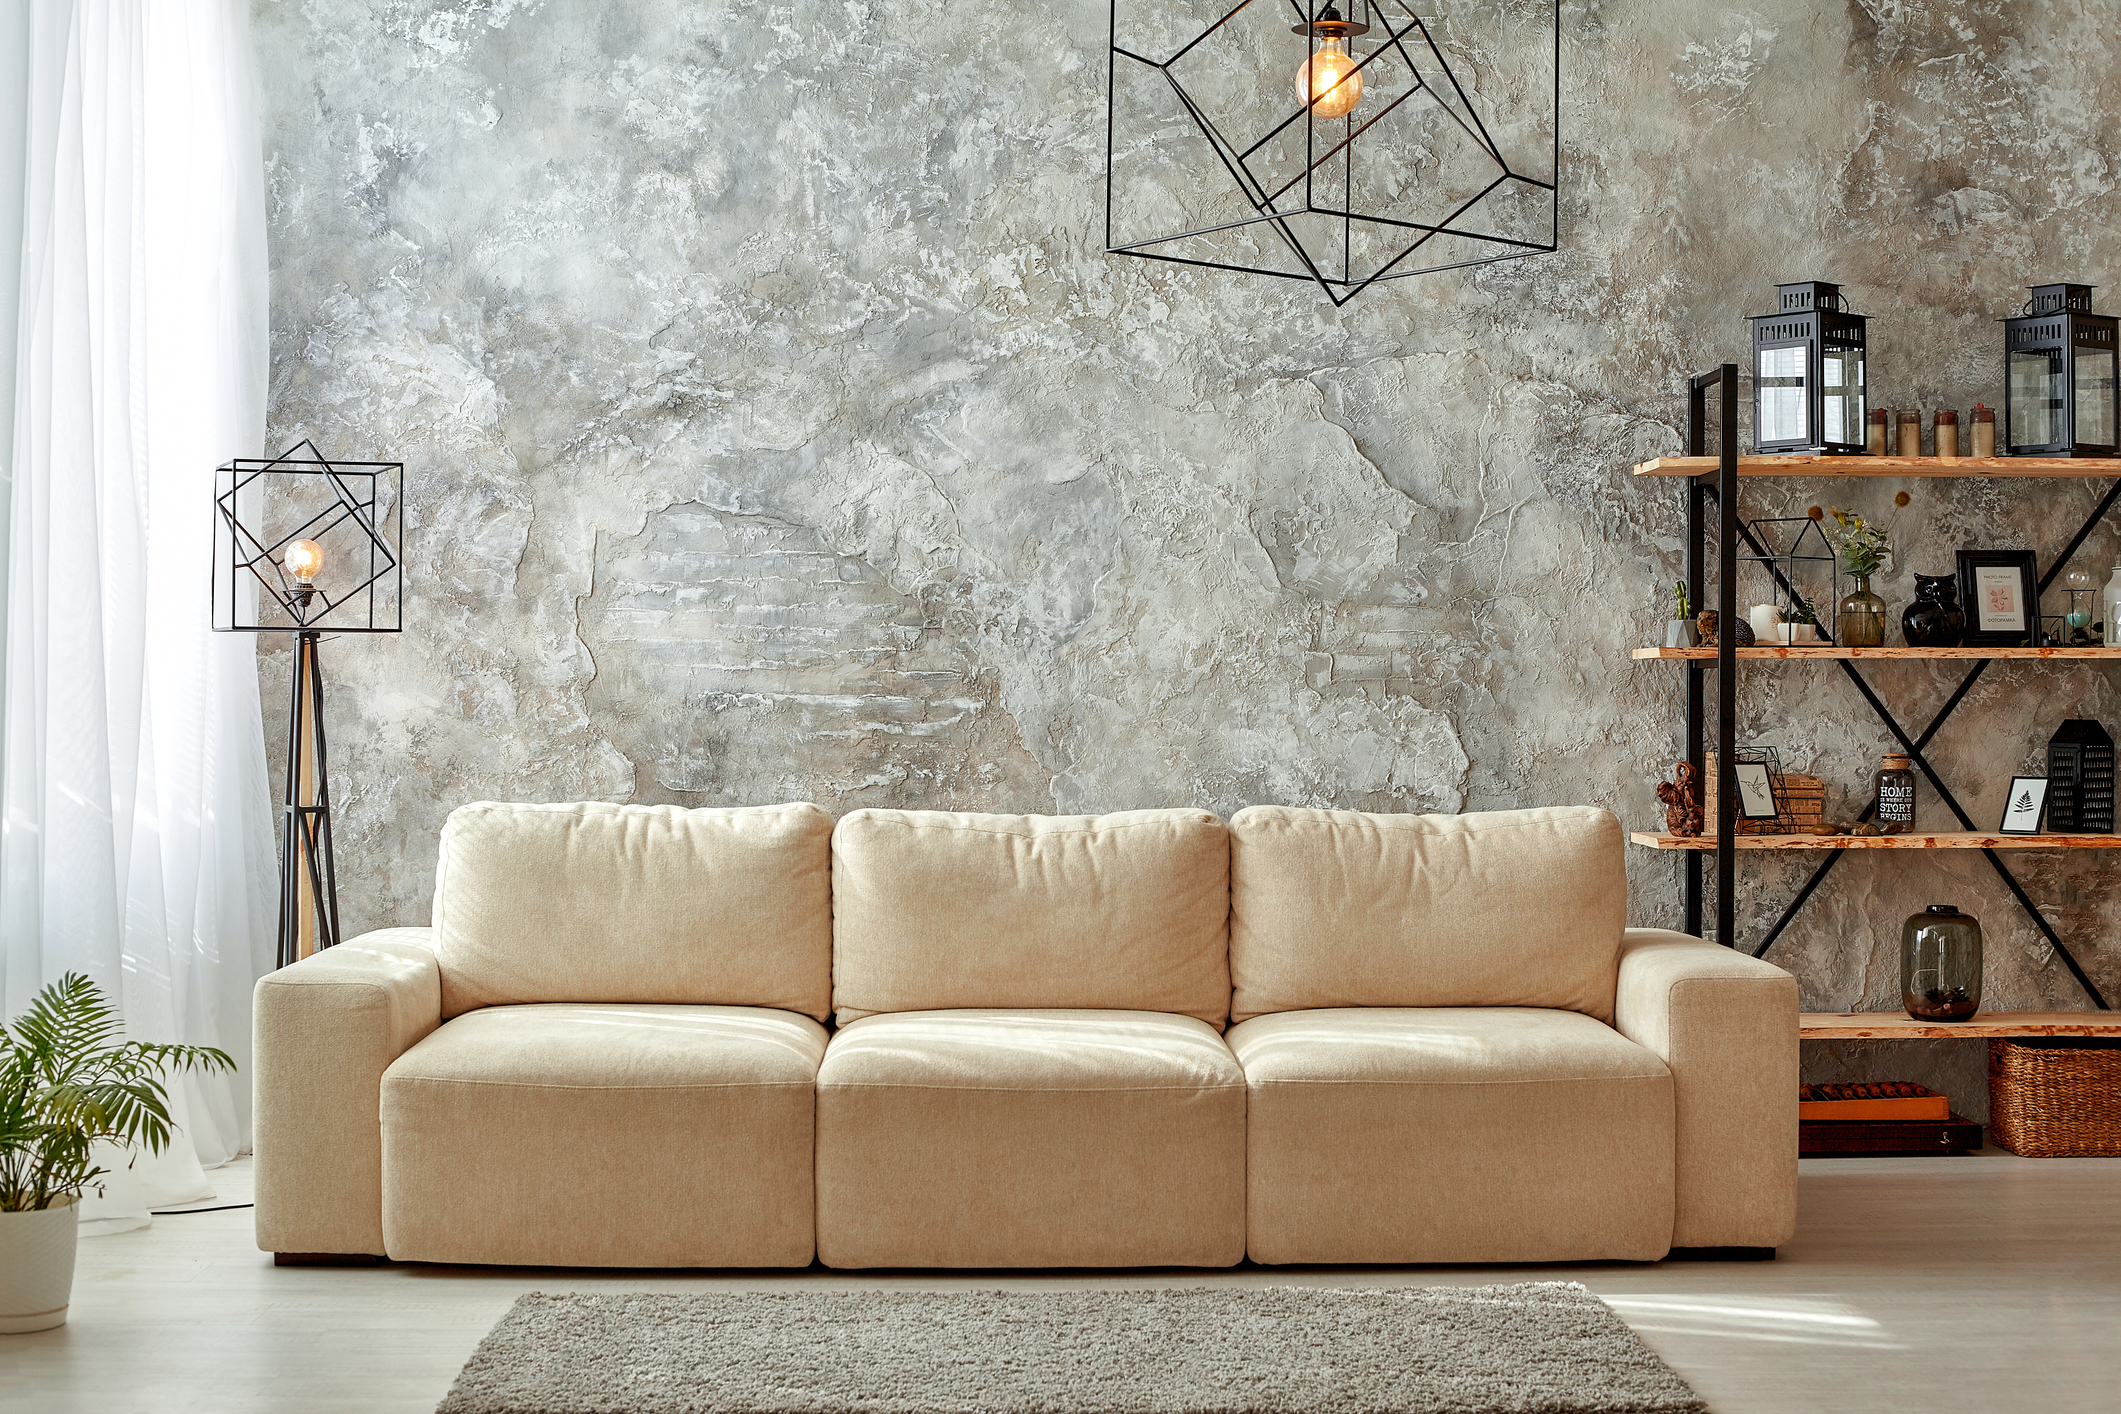 floor-seating-sofa